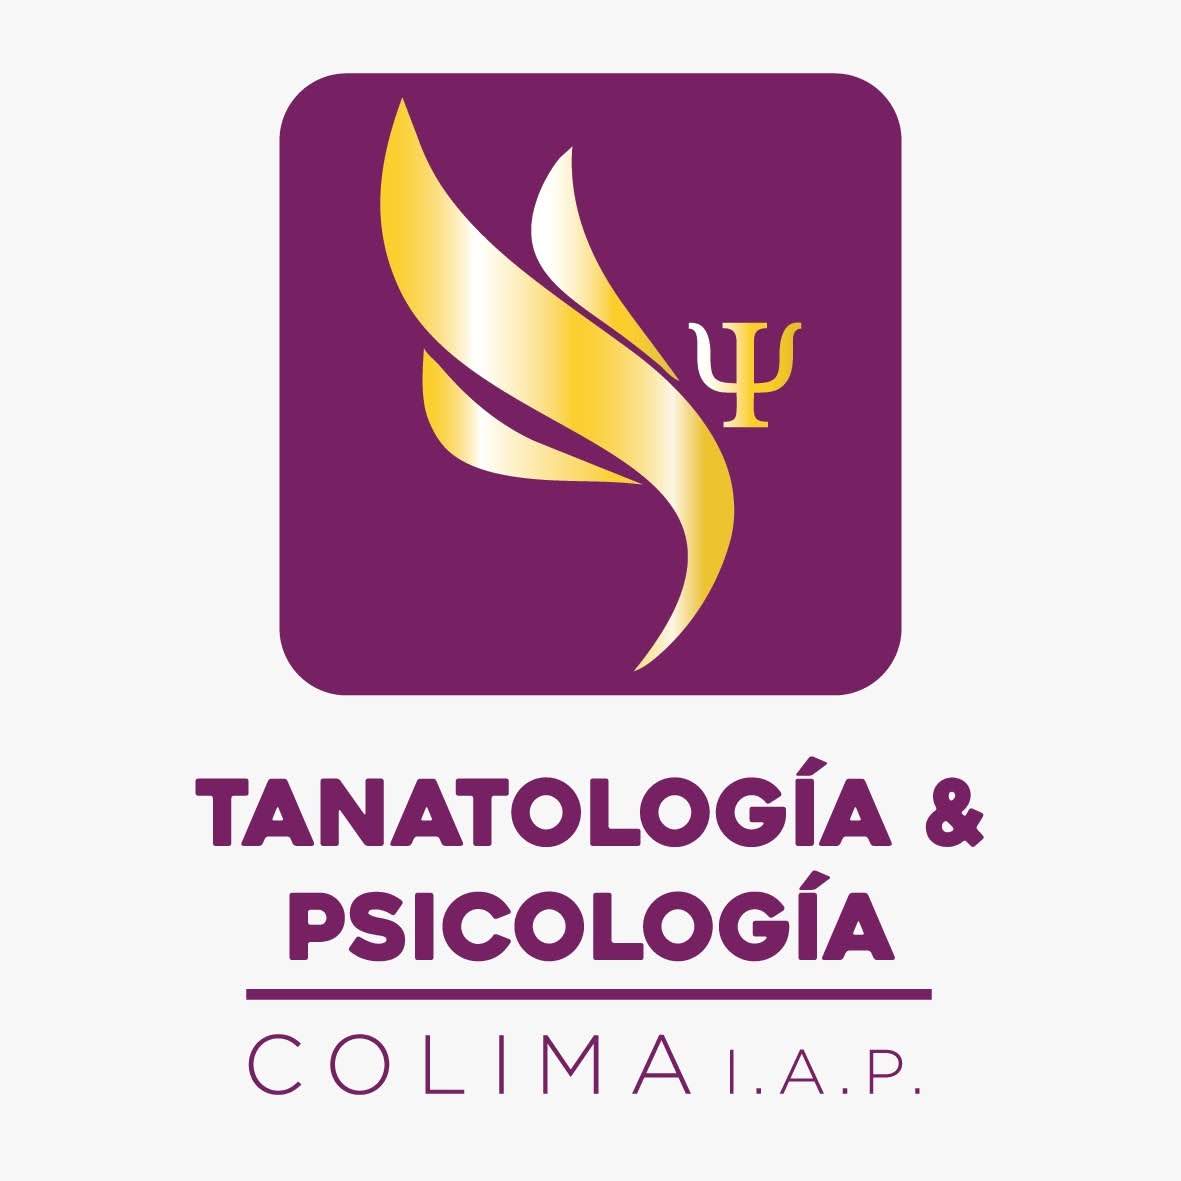 Tanatología y Psicología Colima, I.A.P.